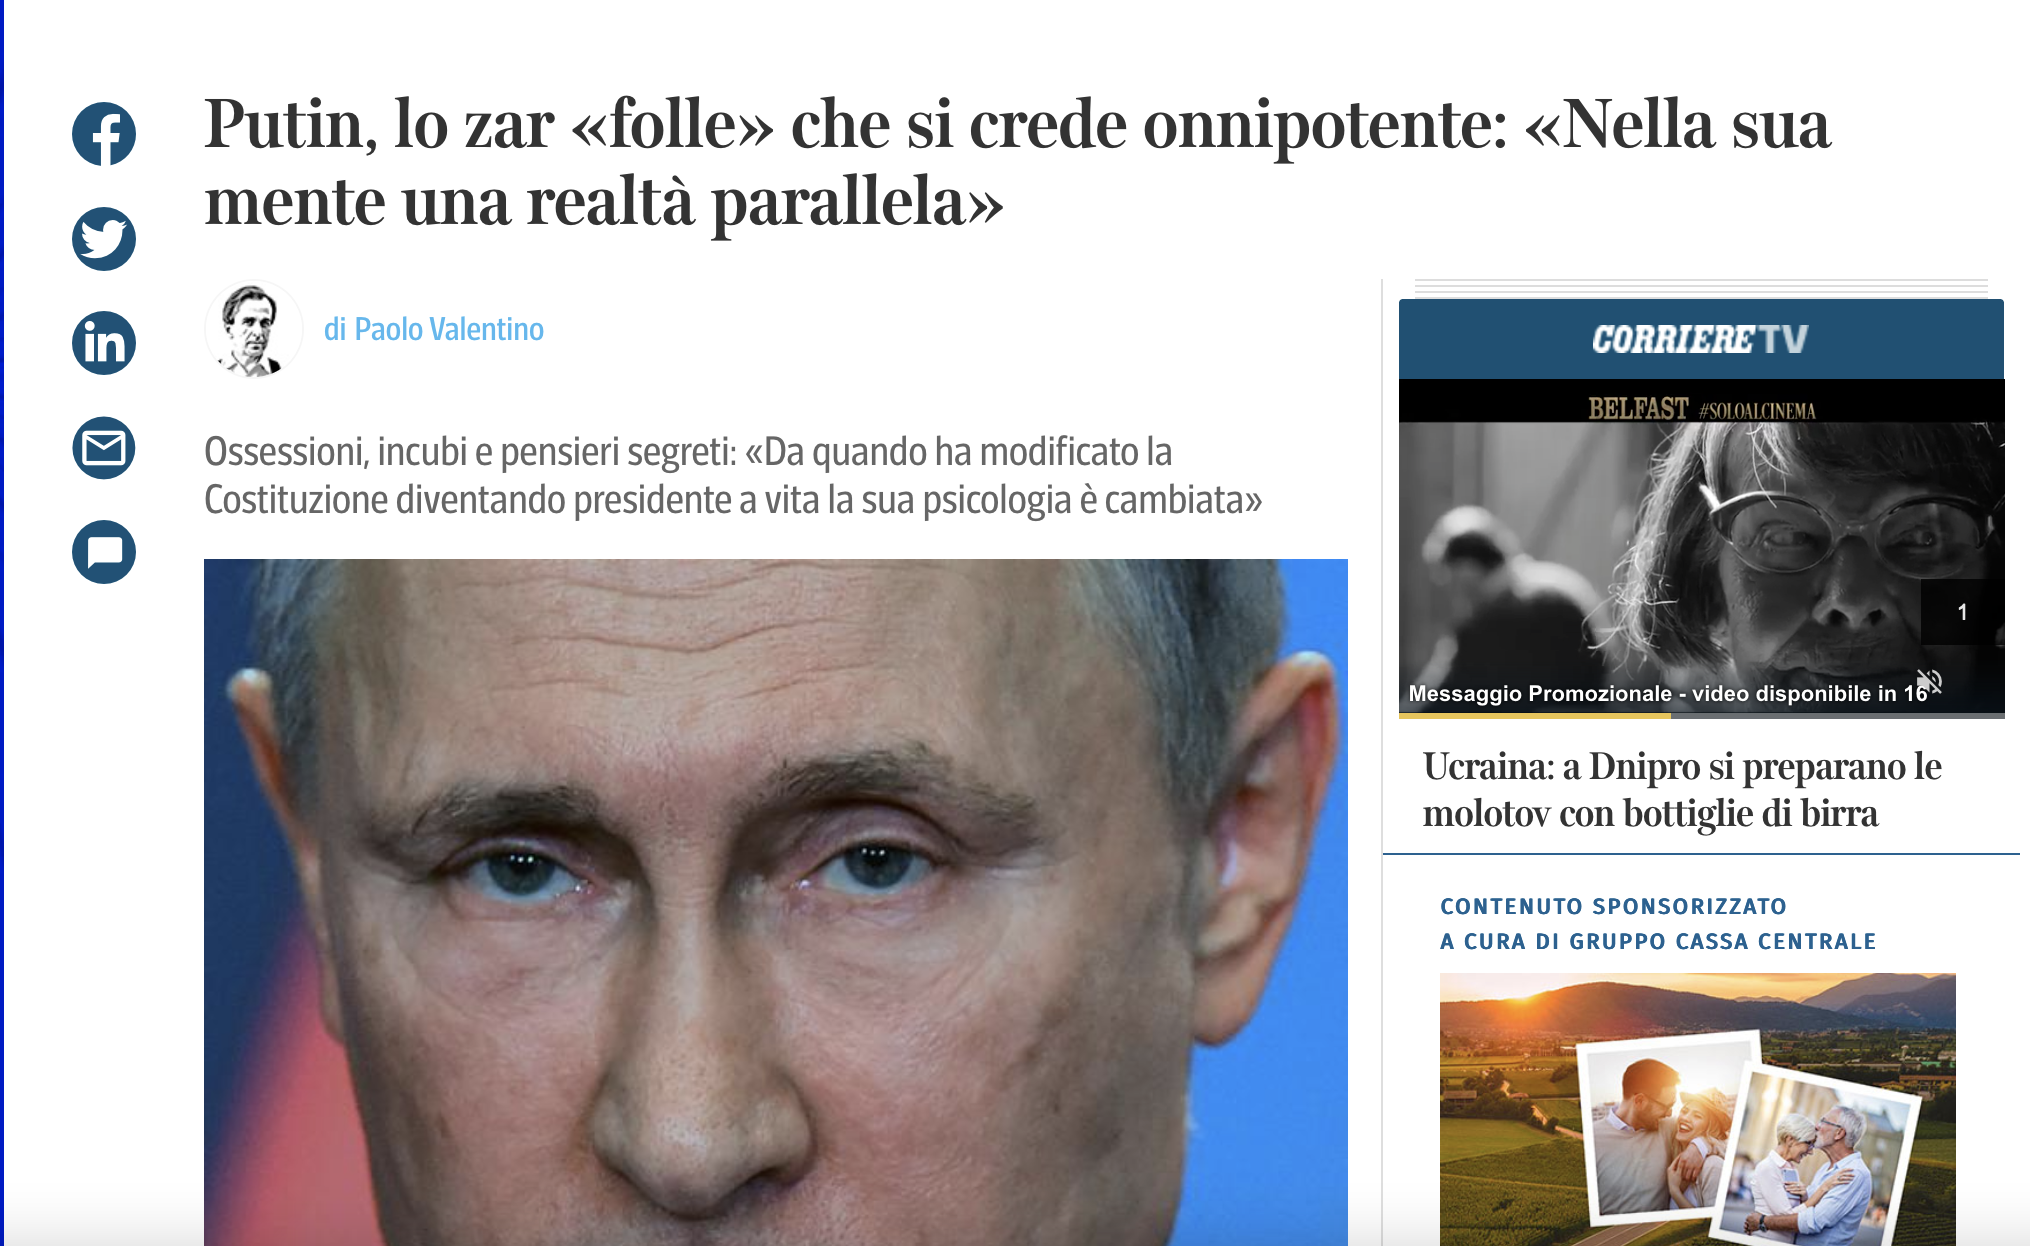 Putin descrizione Corriere